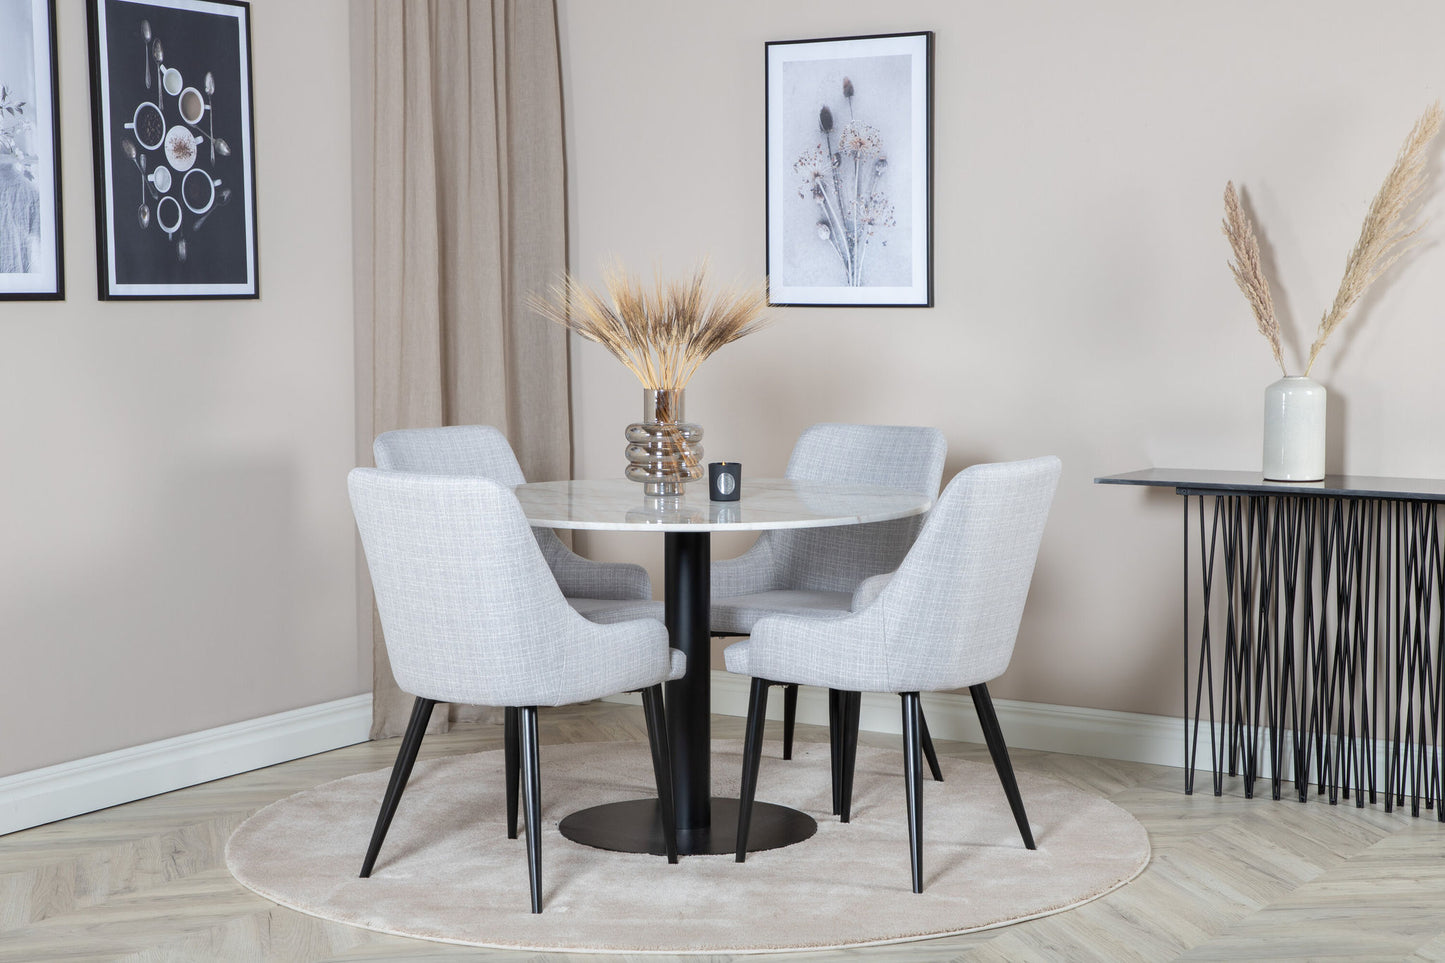 Estelle - Rundt spisebord, ø106 H75 - Hvid / Sort+ Plaza stol - Sorte ben - Lysegråt stof